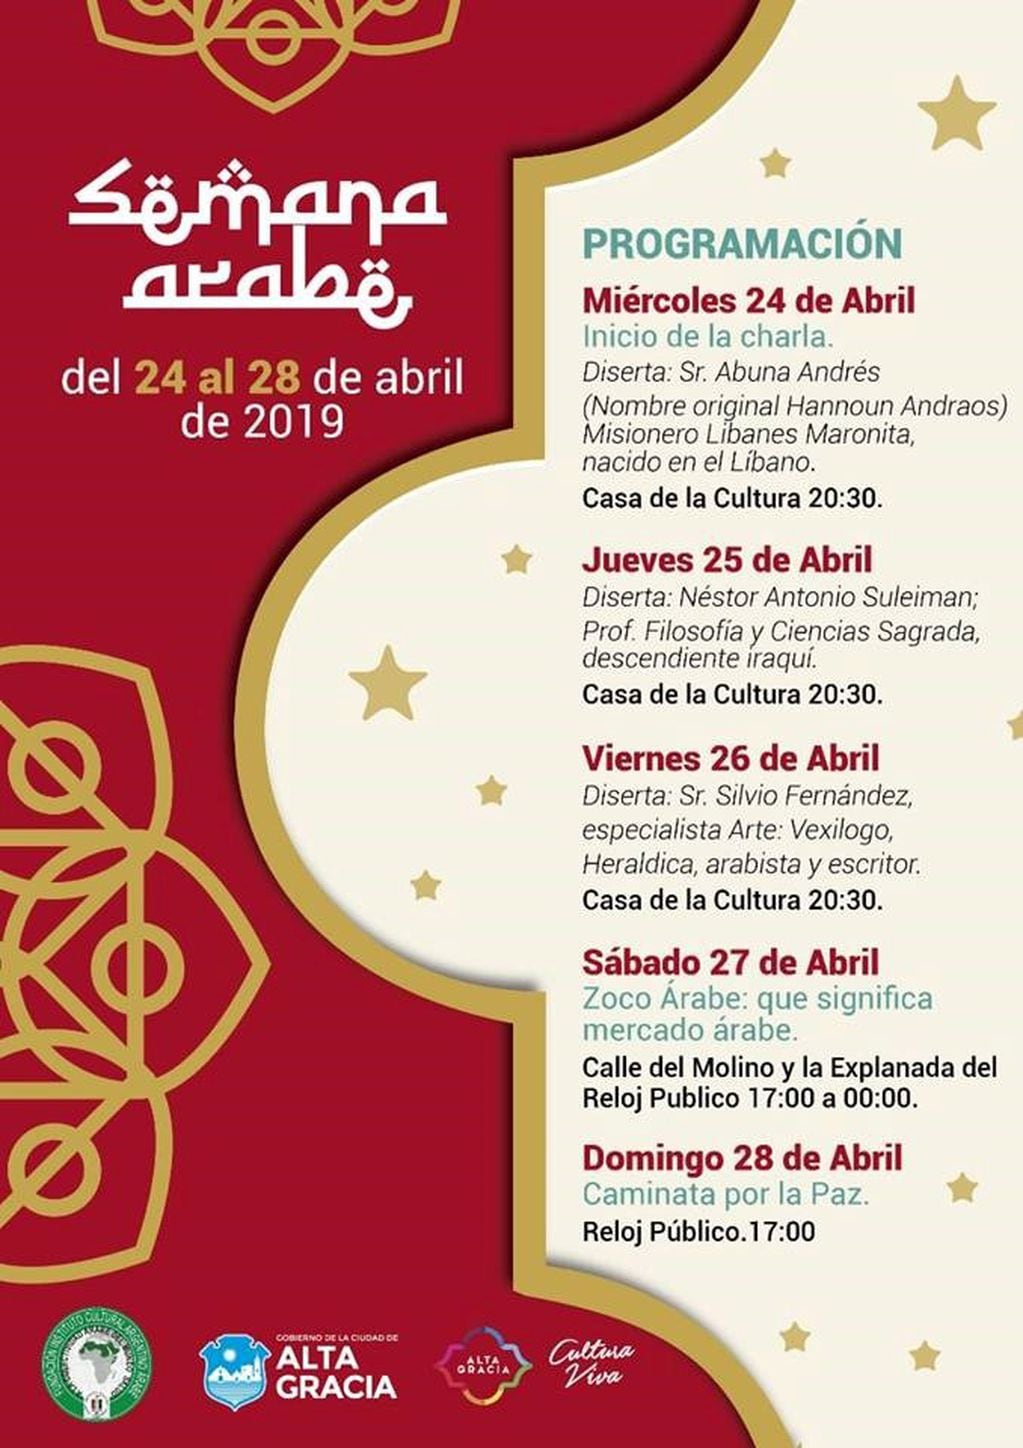 Programación de actividades en la celebración de la Semana Árabe en Alta Gracia.